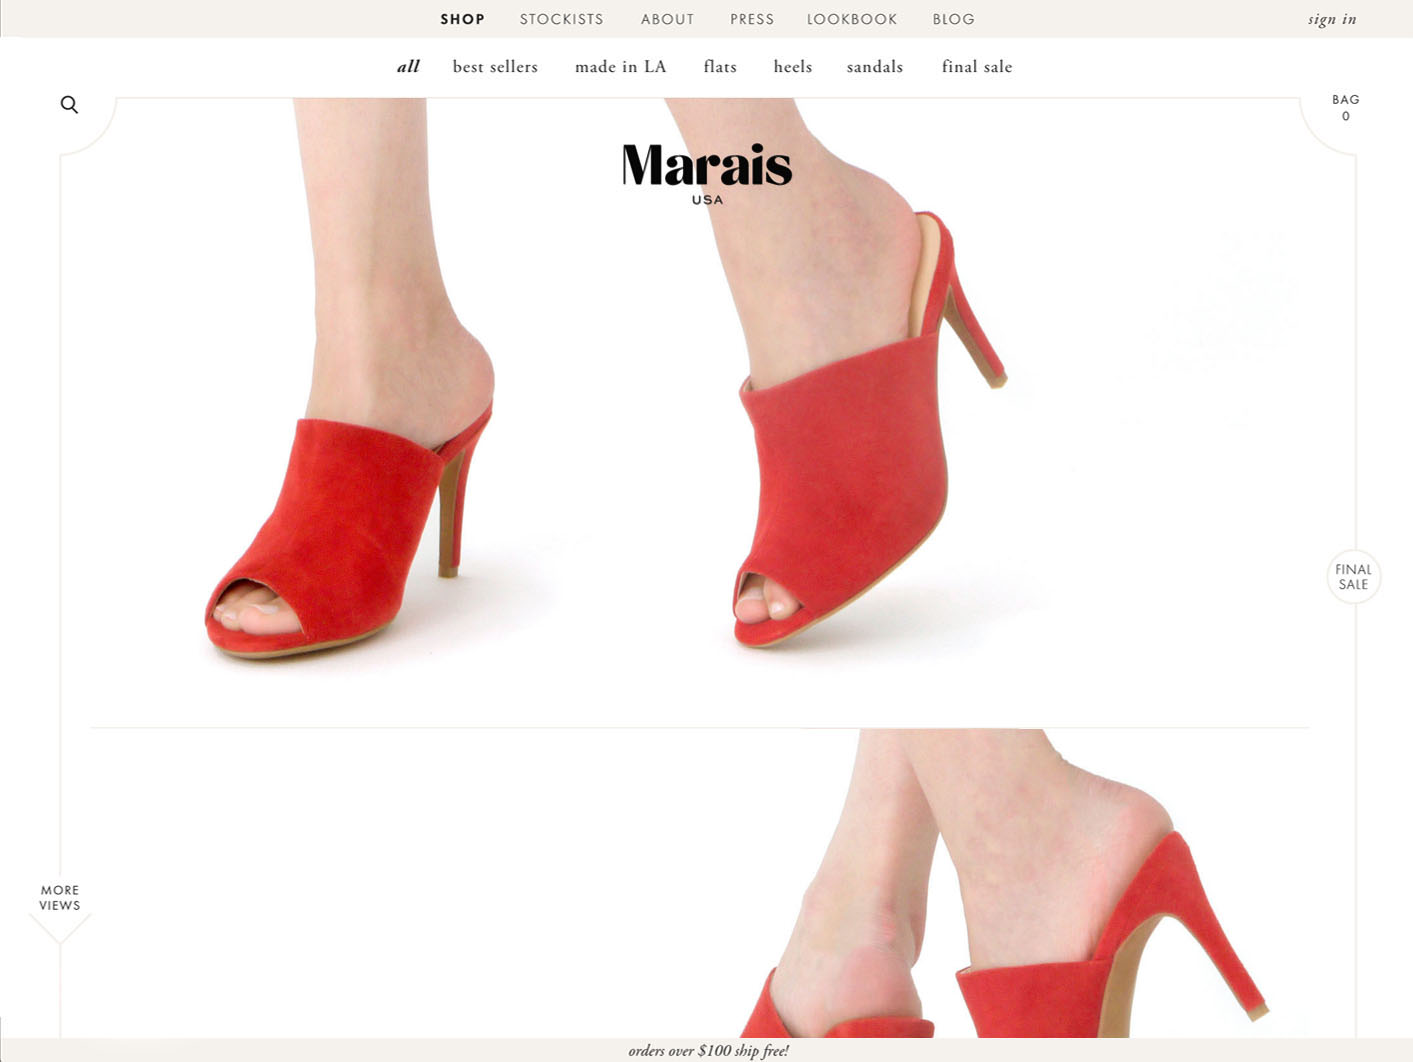 Marais website designed by Scissor.